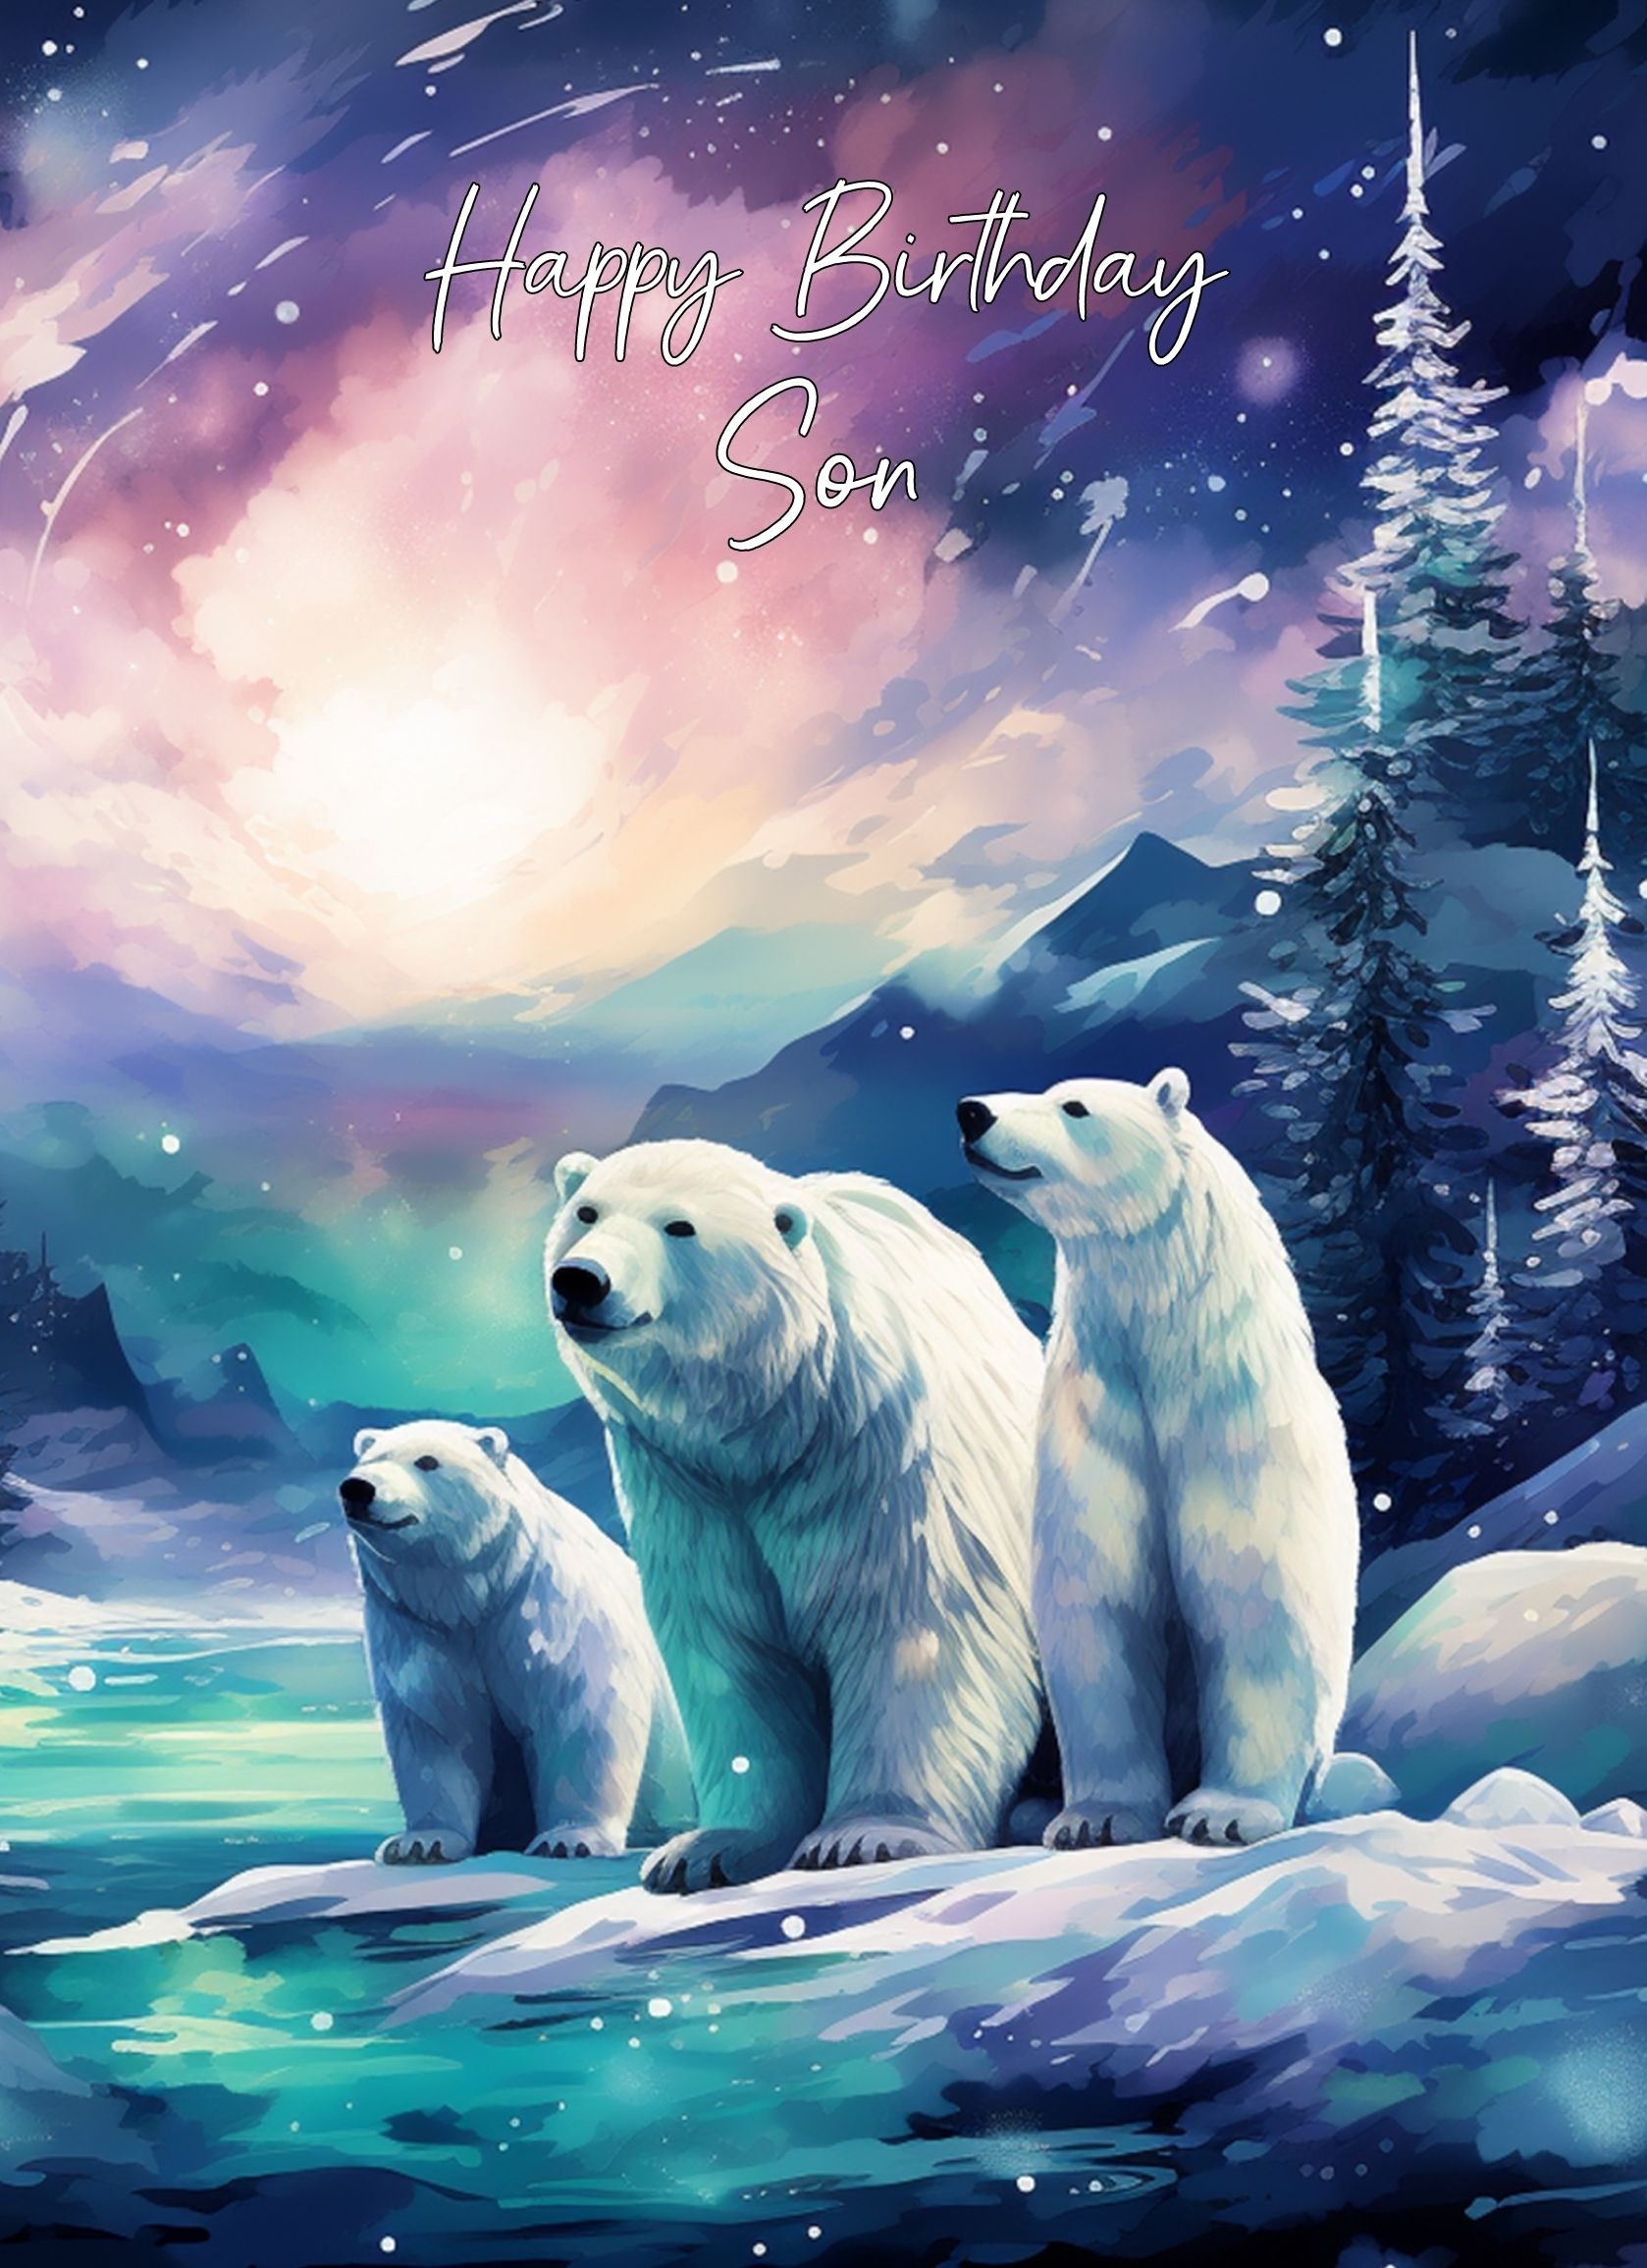 Polar Bear Art Birthday Card For Son (Design 1)